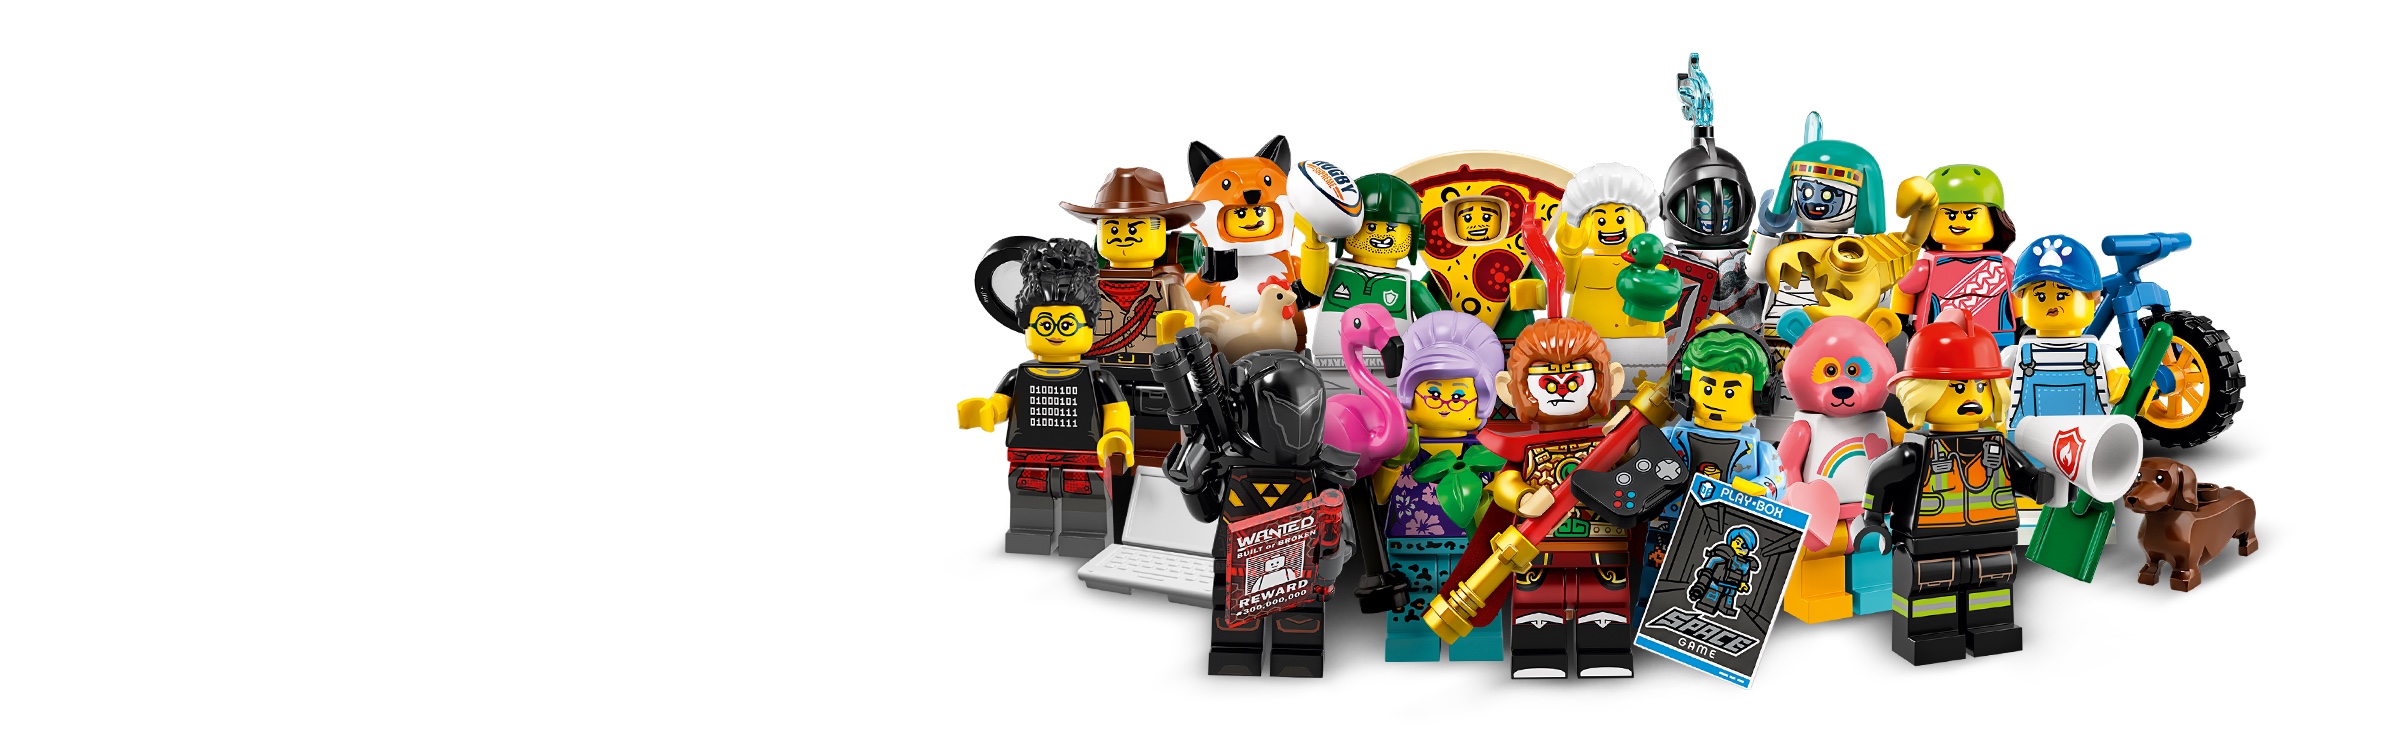 Lego Serie 19 Minifiguren Wähle Ihre Figur BRANDNEU Komplett Sets 71025 